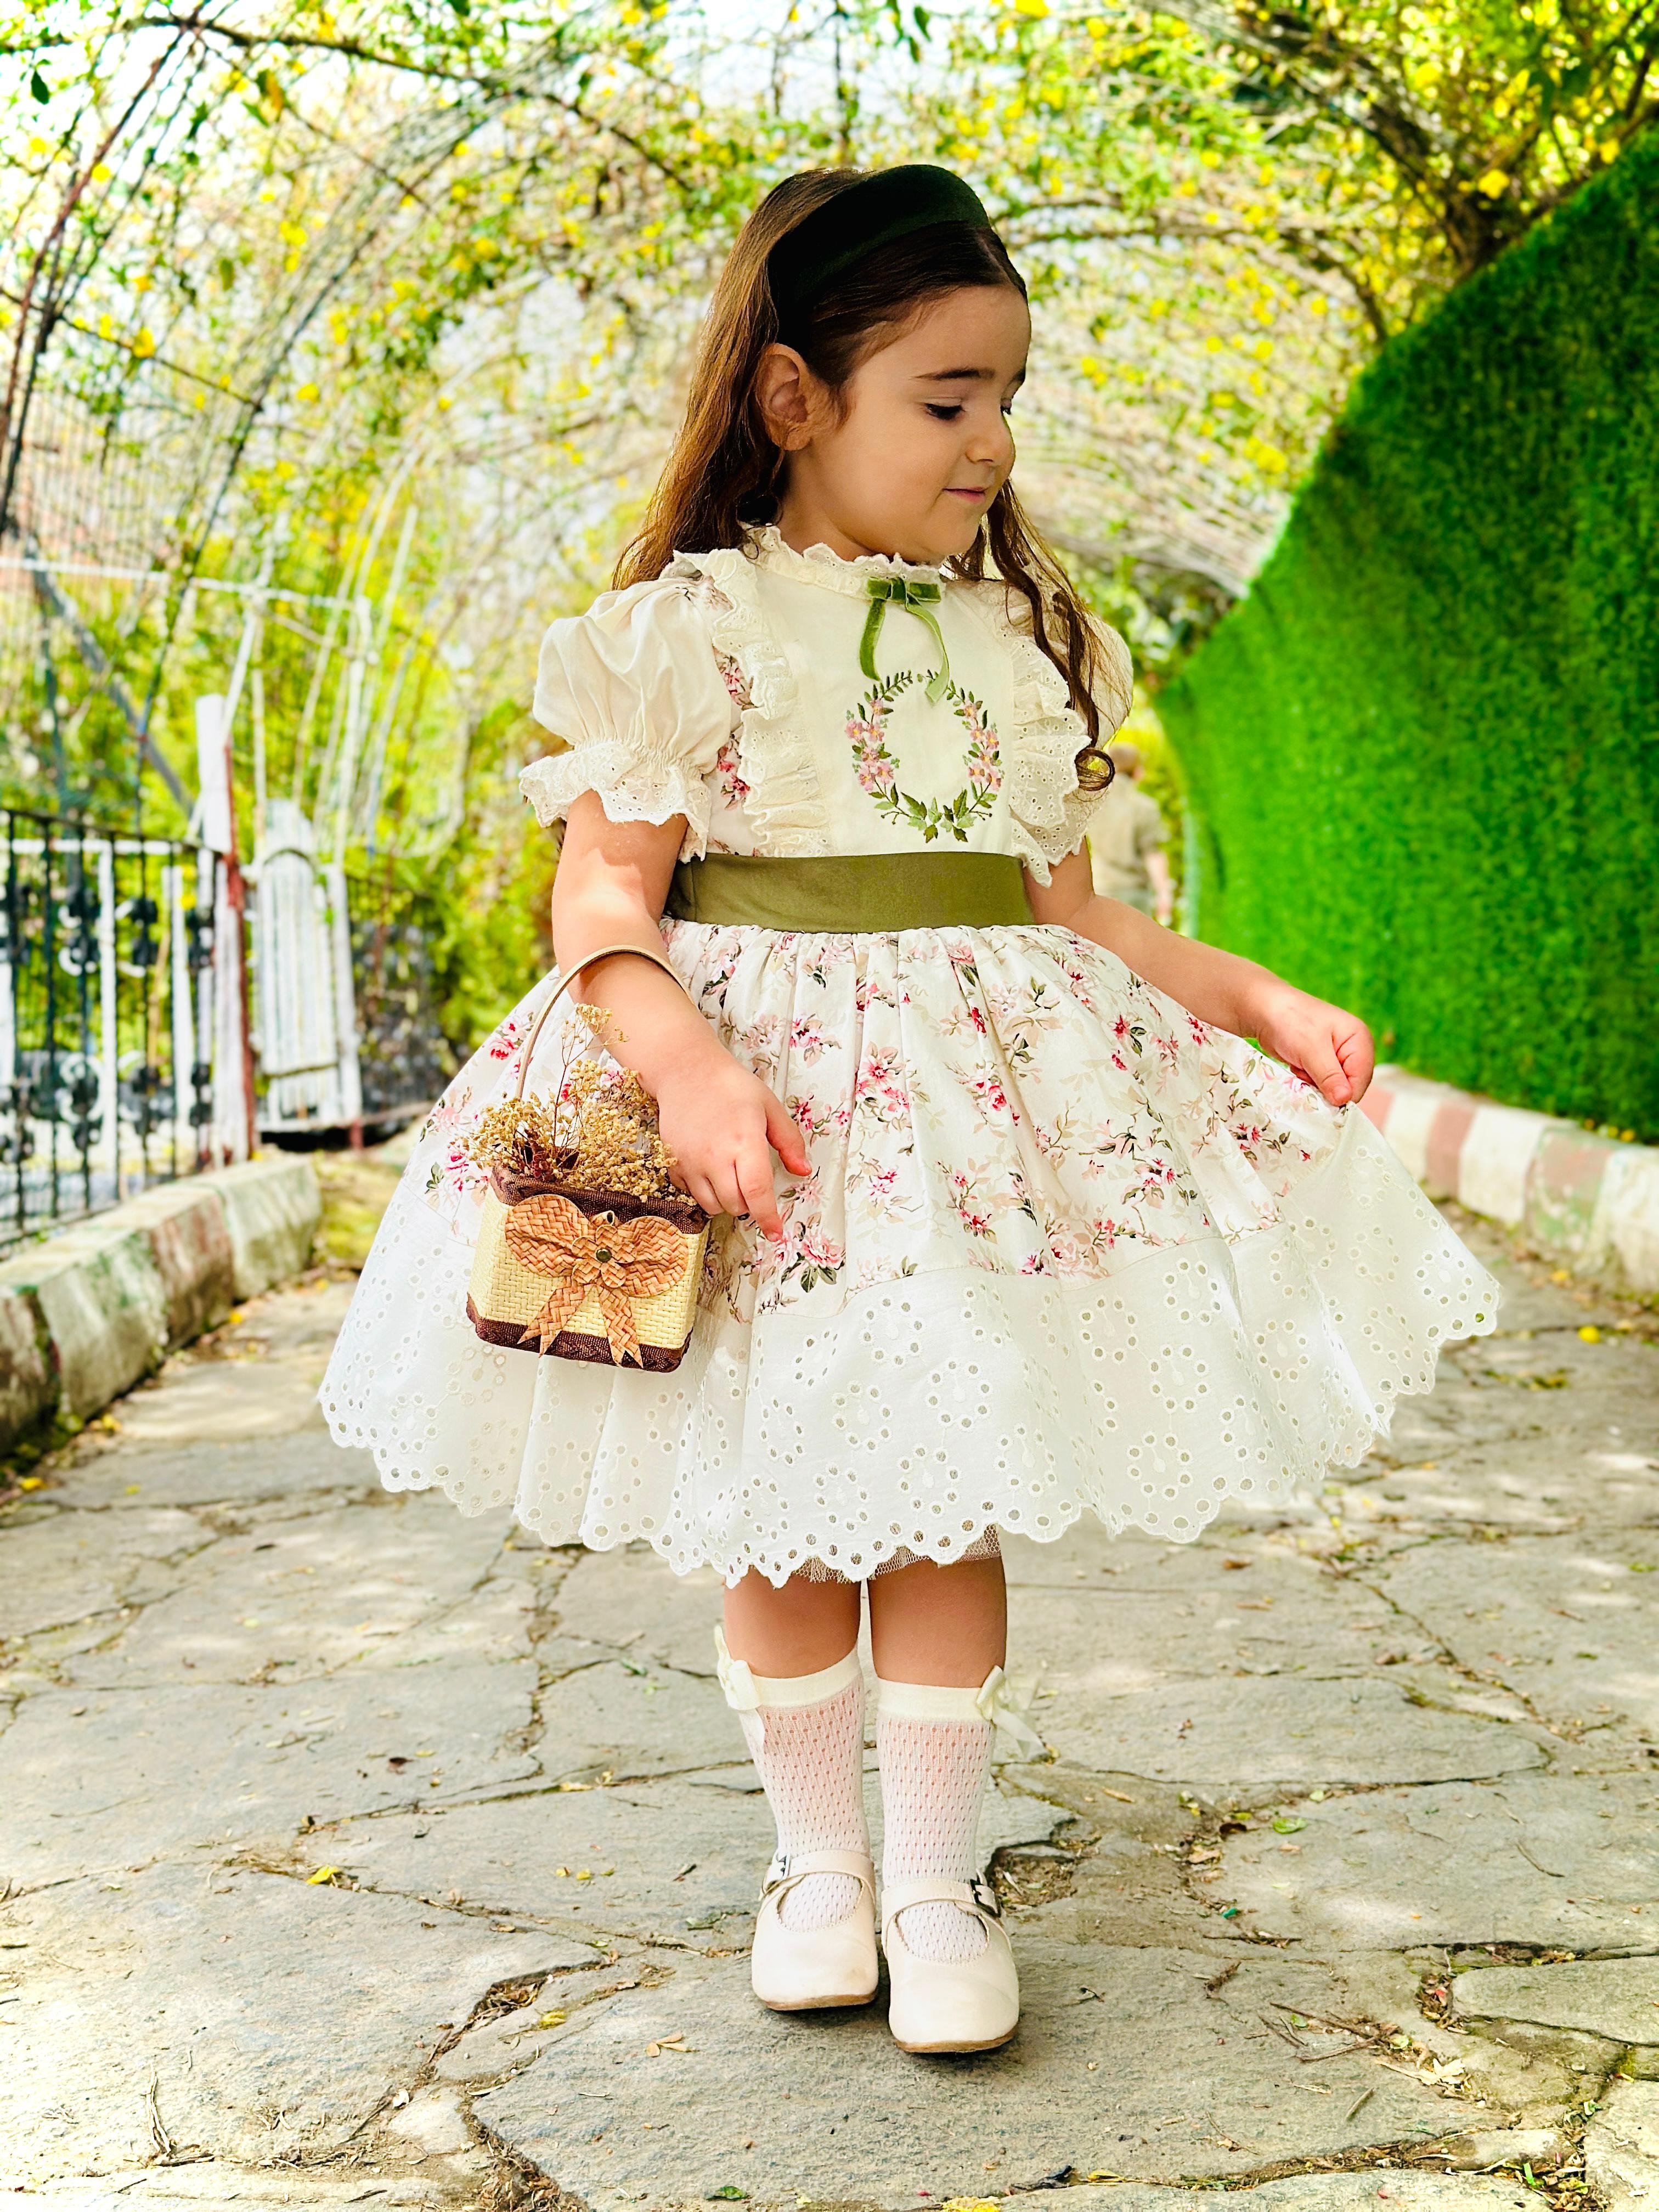 Krem Bahar Vintage Kız Bebek Elbise,Doğum günü elbise,fotoğraf çekim elbise,0-10 Yaş Uygun